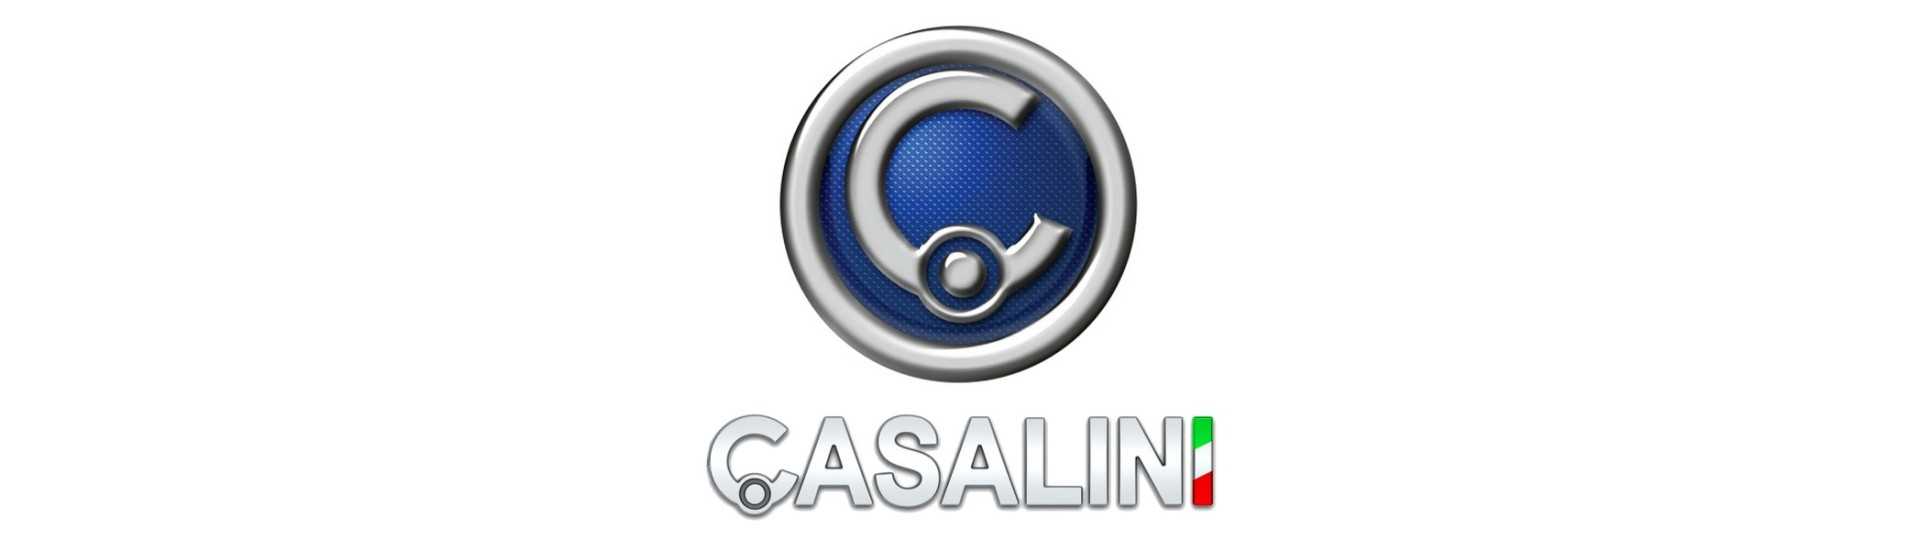 Pachet roți la cel mai bun preț pentru mașini fără permis Casalini